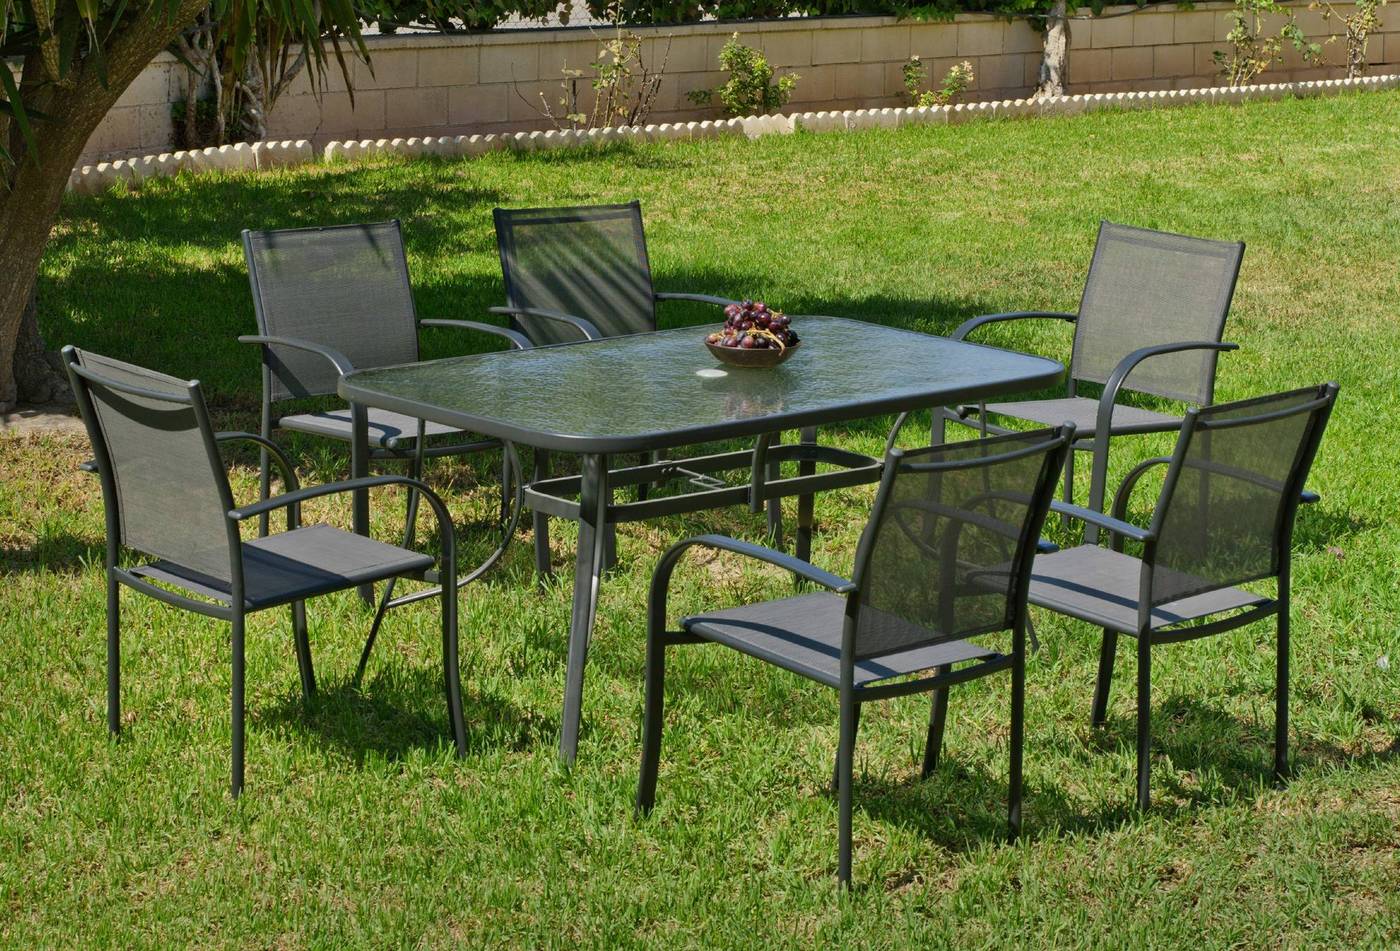 Conjunto de acero color antracita: mesa de 150 cm. Con tapa de cristal templado + 4 sillones de acero y textilen